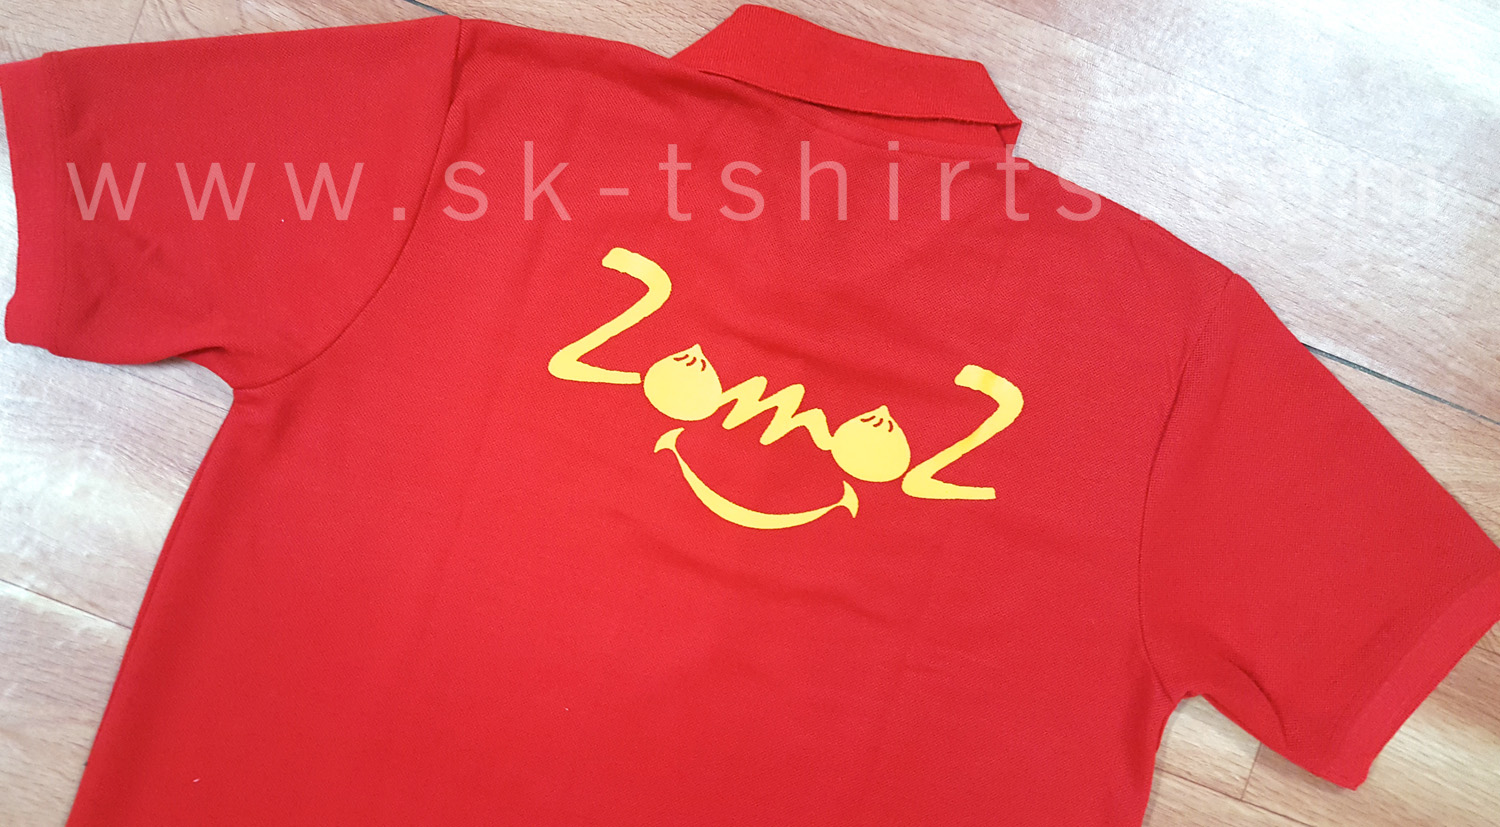 Collar Uniform Tshirts With Logo Print, Sk-tshirts